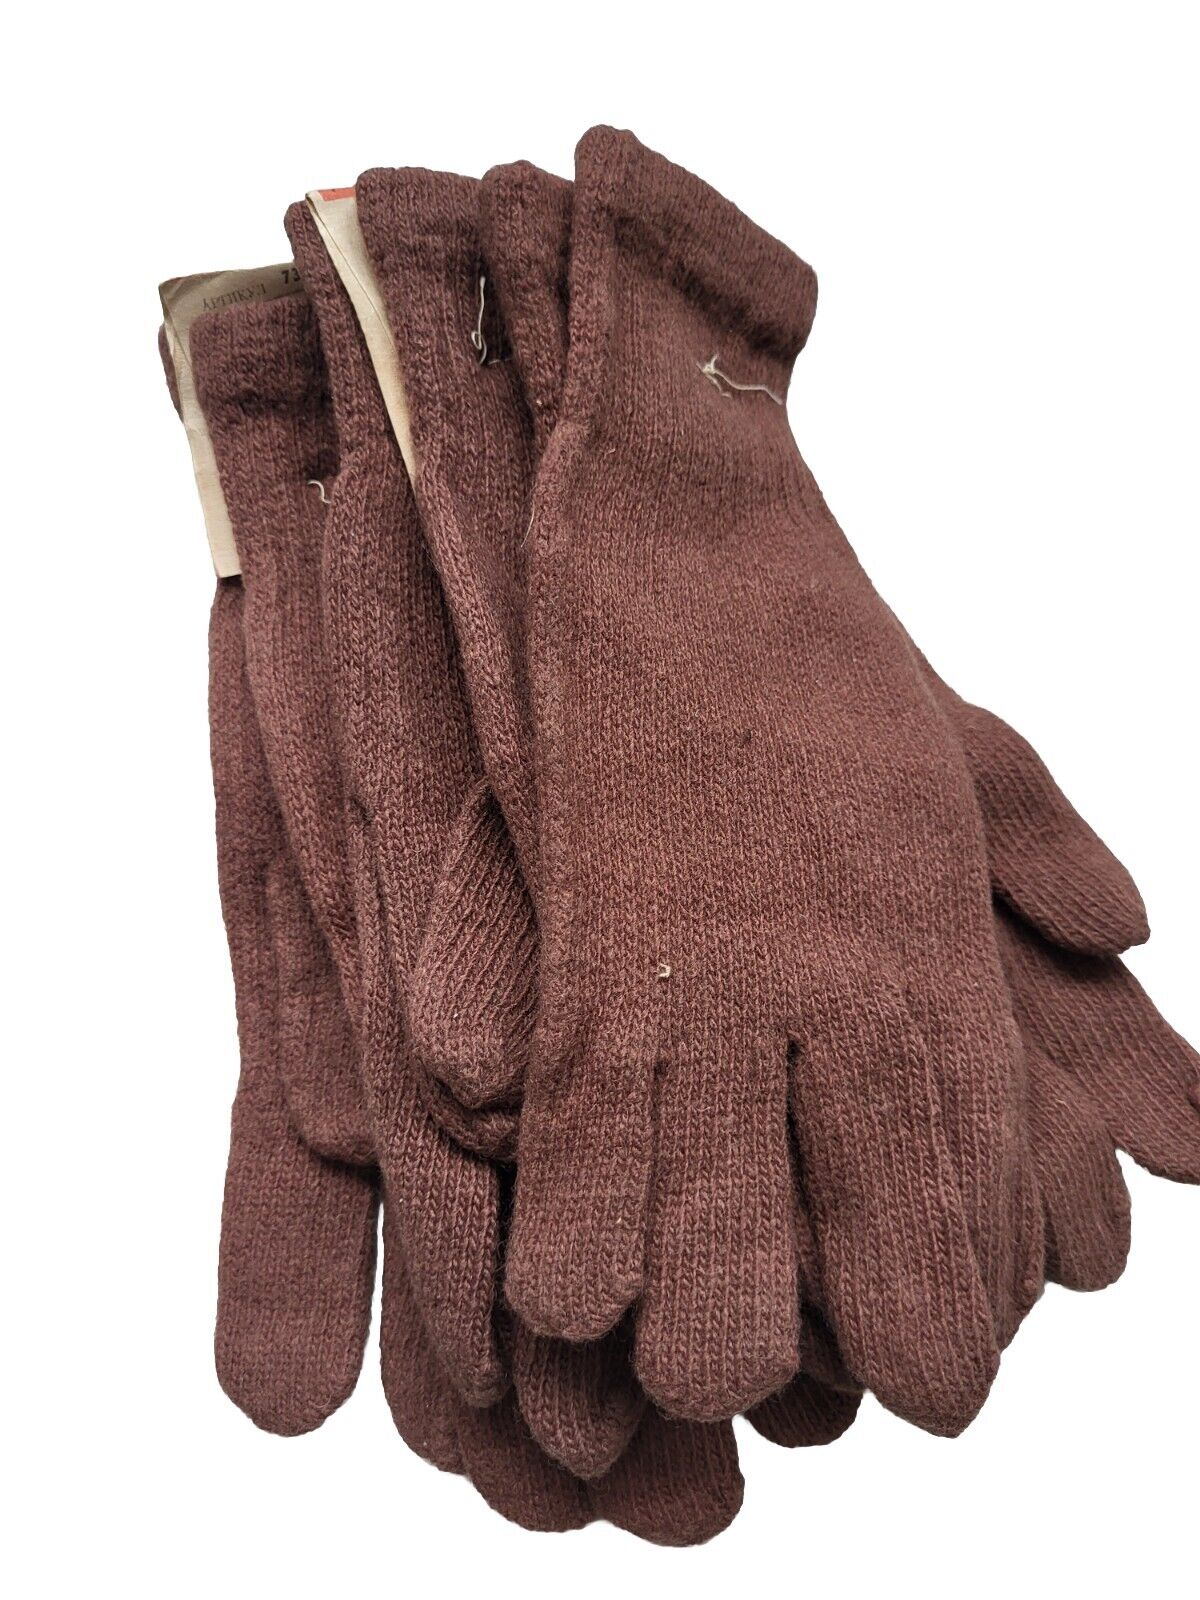  Soviet VTG Military Winter Brown Gloves (CAMEL HAIR), NEW SIZE  9